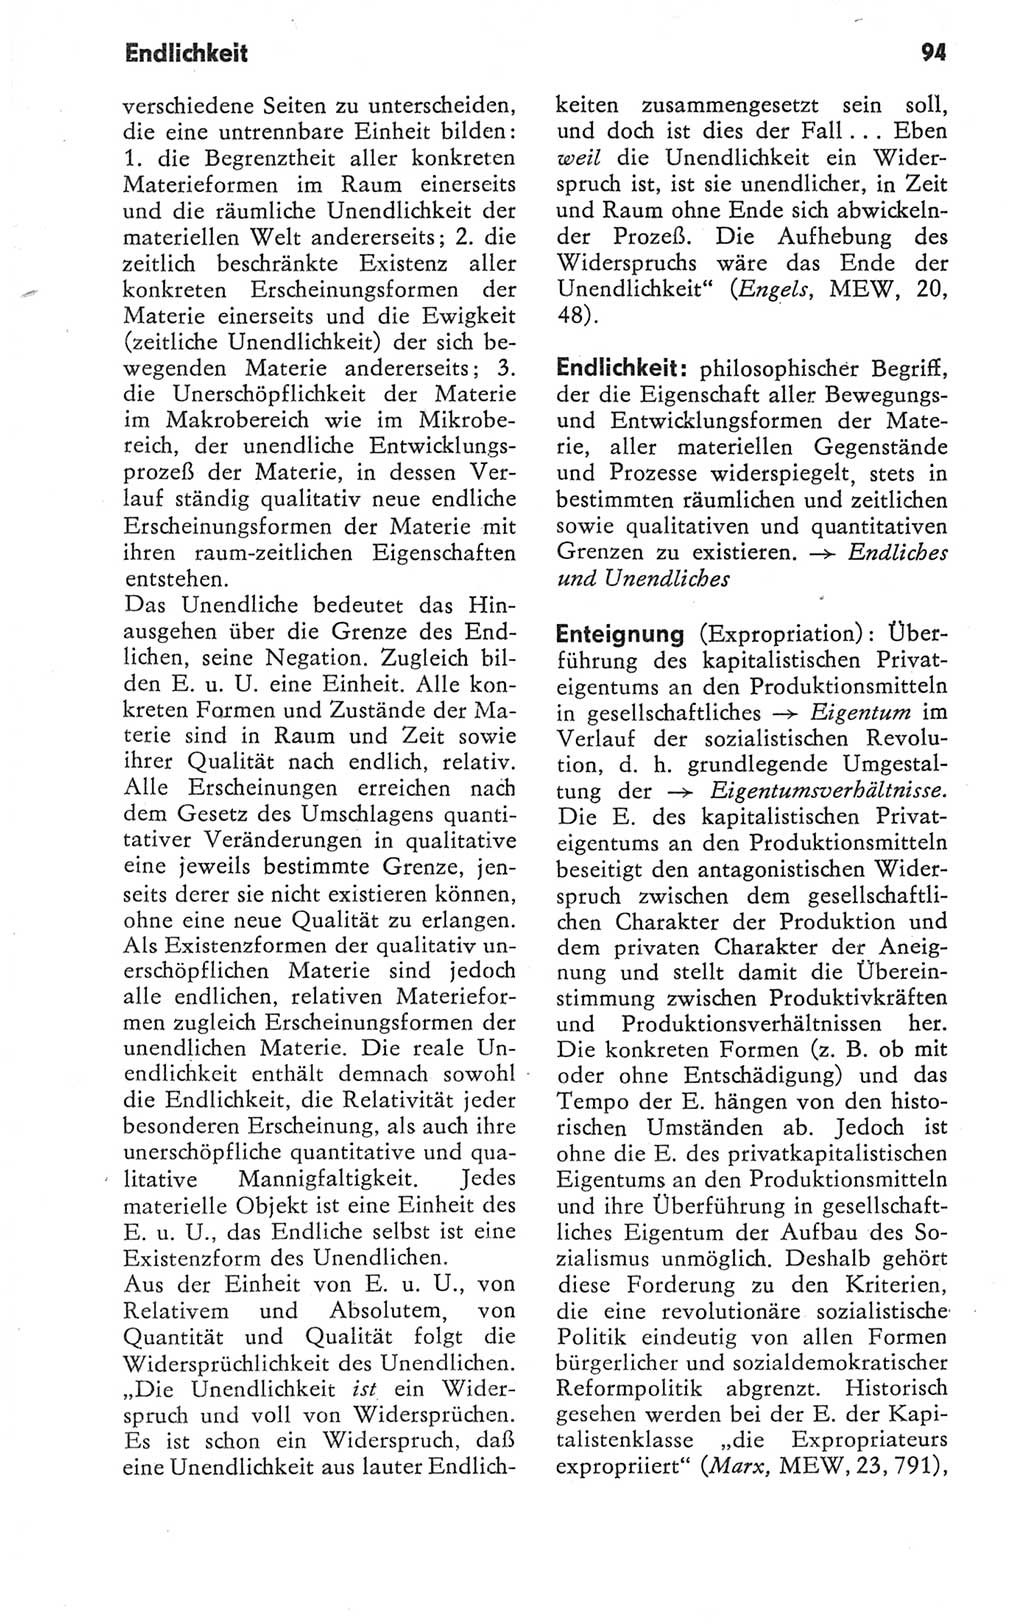 Kleines Wörterbuch der marxistisch-leninistischen Philosophie [Deutsche Demokratische Republik (DDR)] 1979, Seite 94 (Kl. Wb. ML Phil. DDR 1979, S. 94)